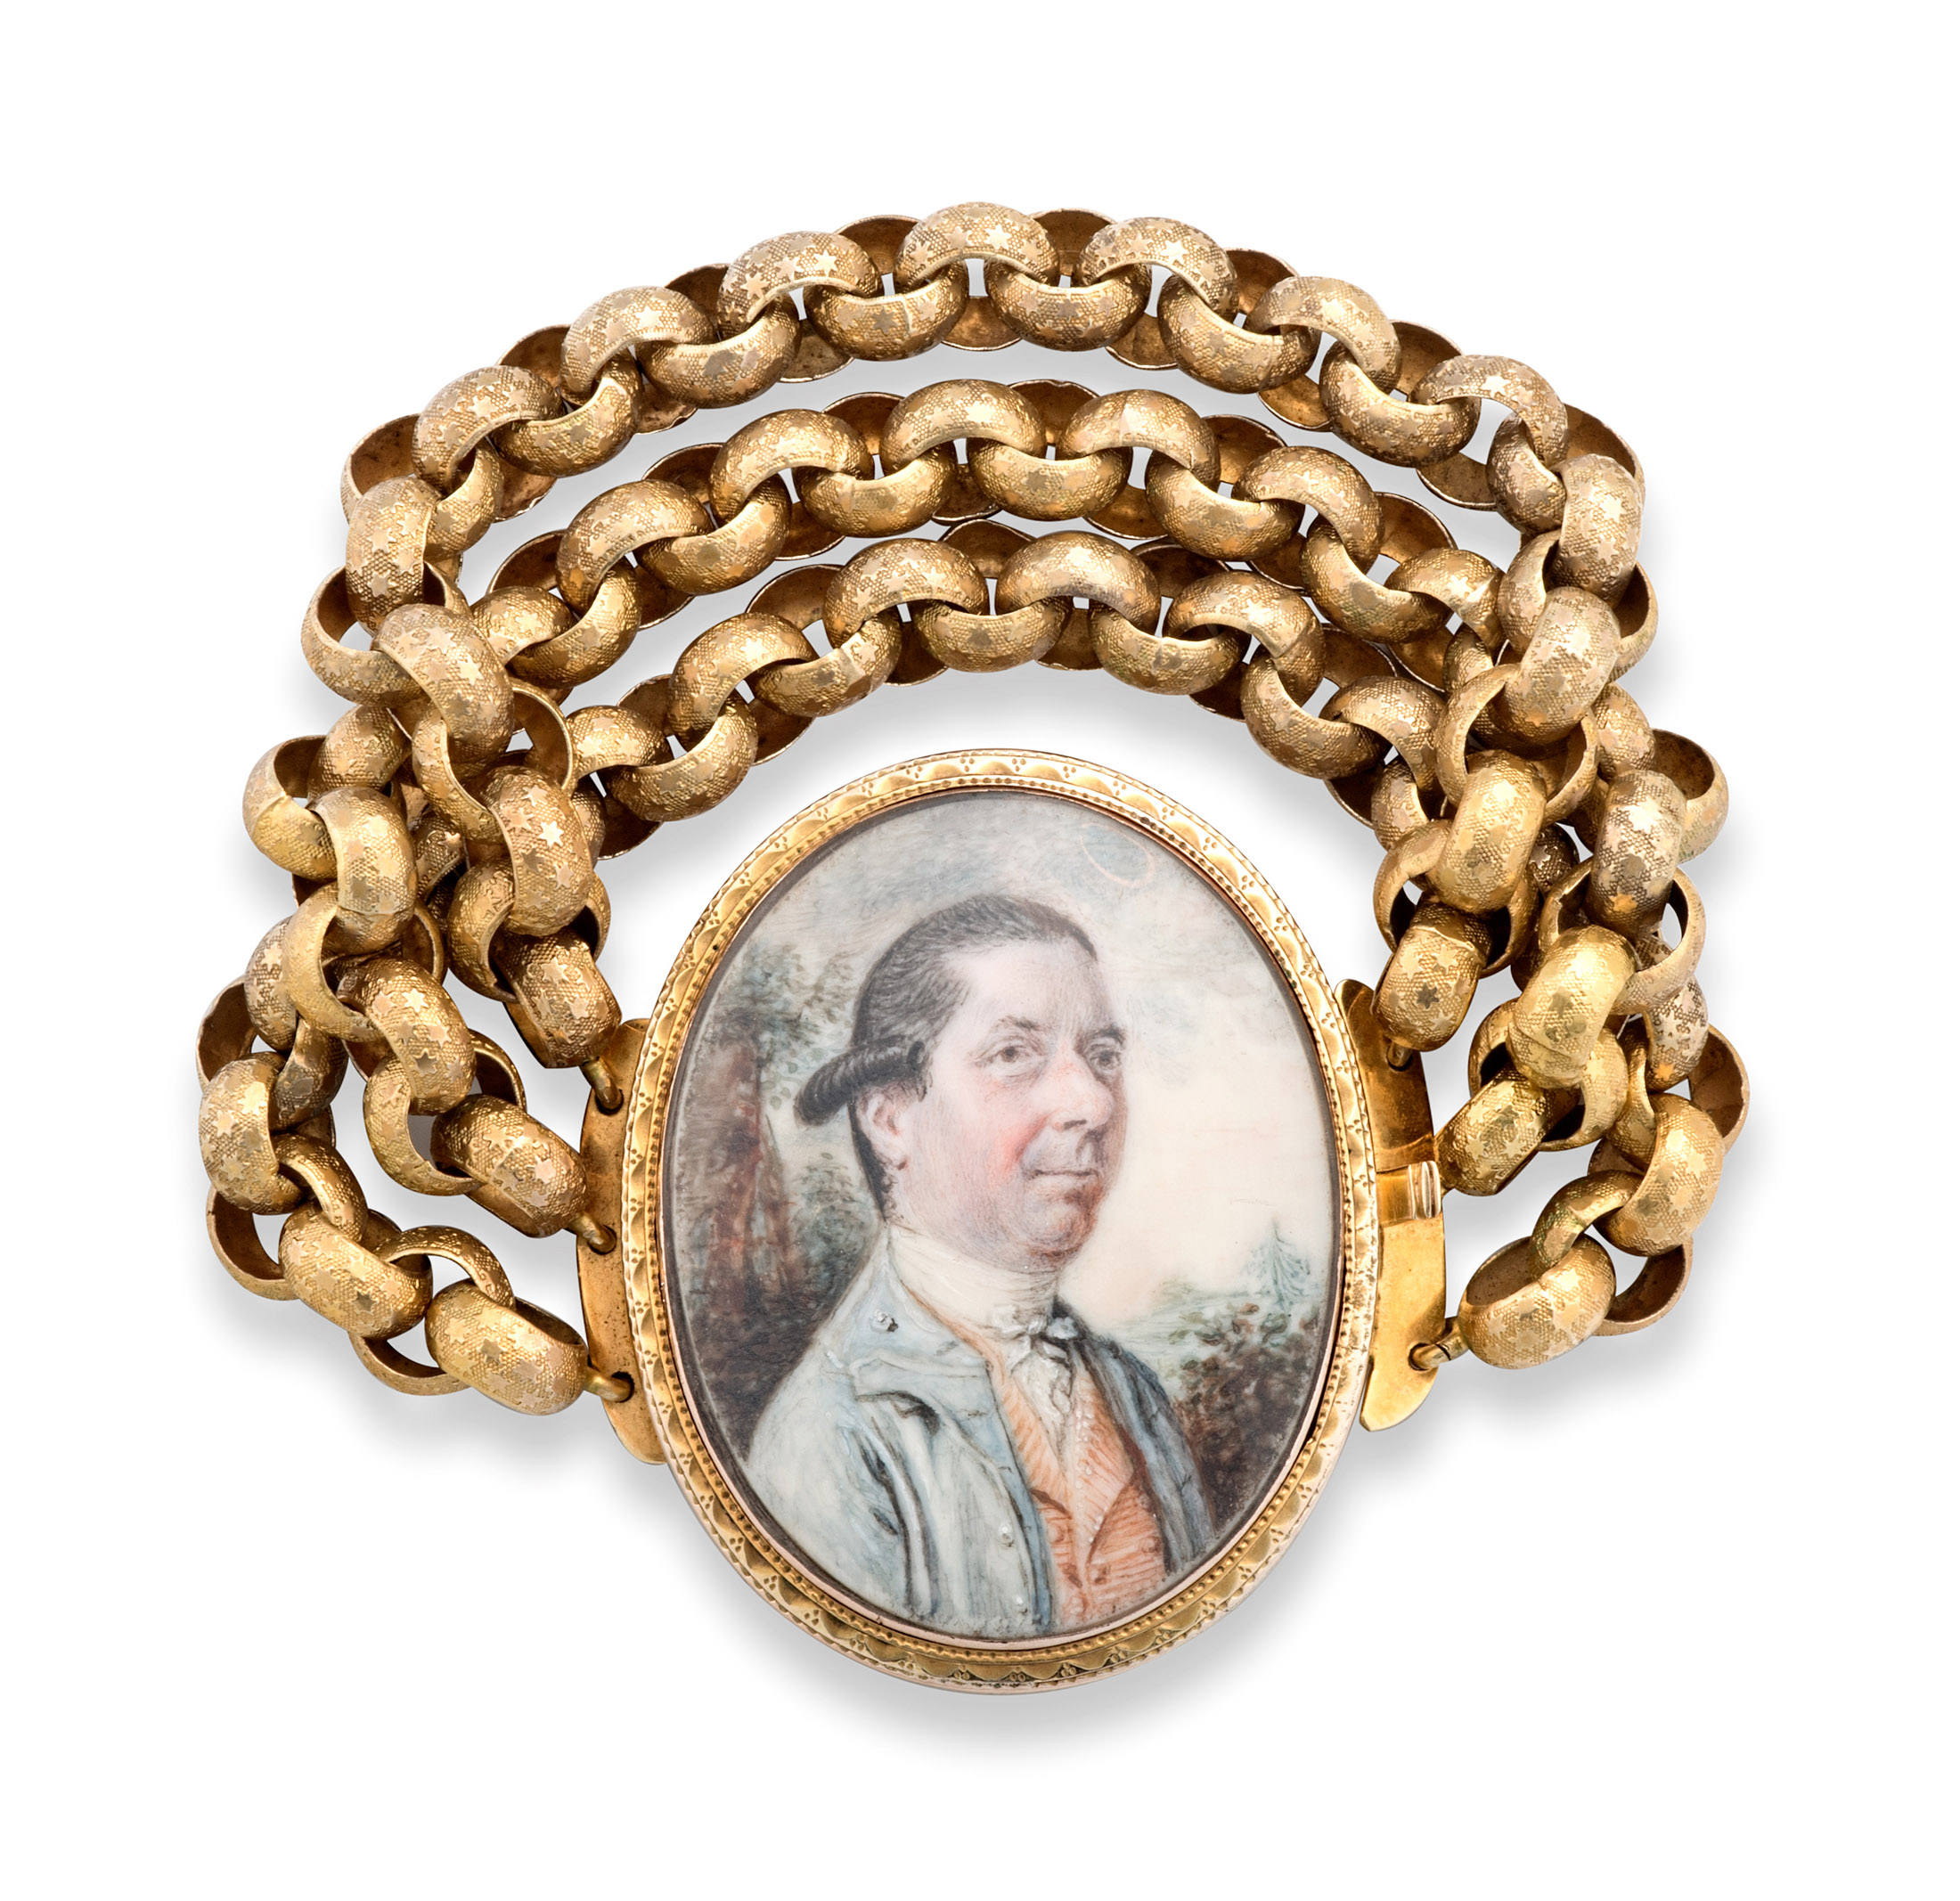 19th century portrait miniature and gold bracelet